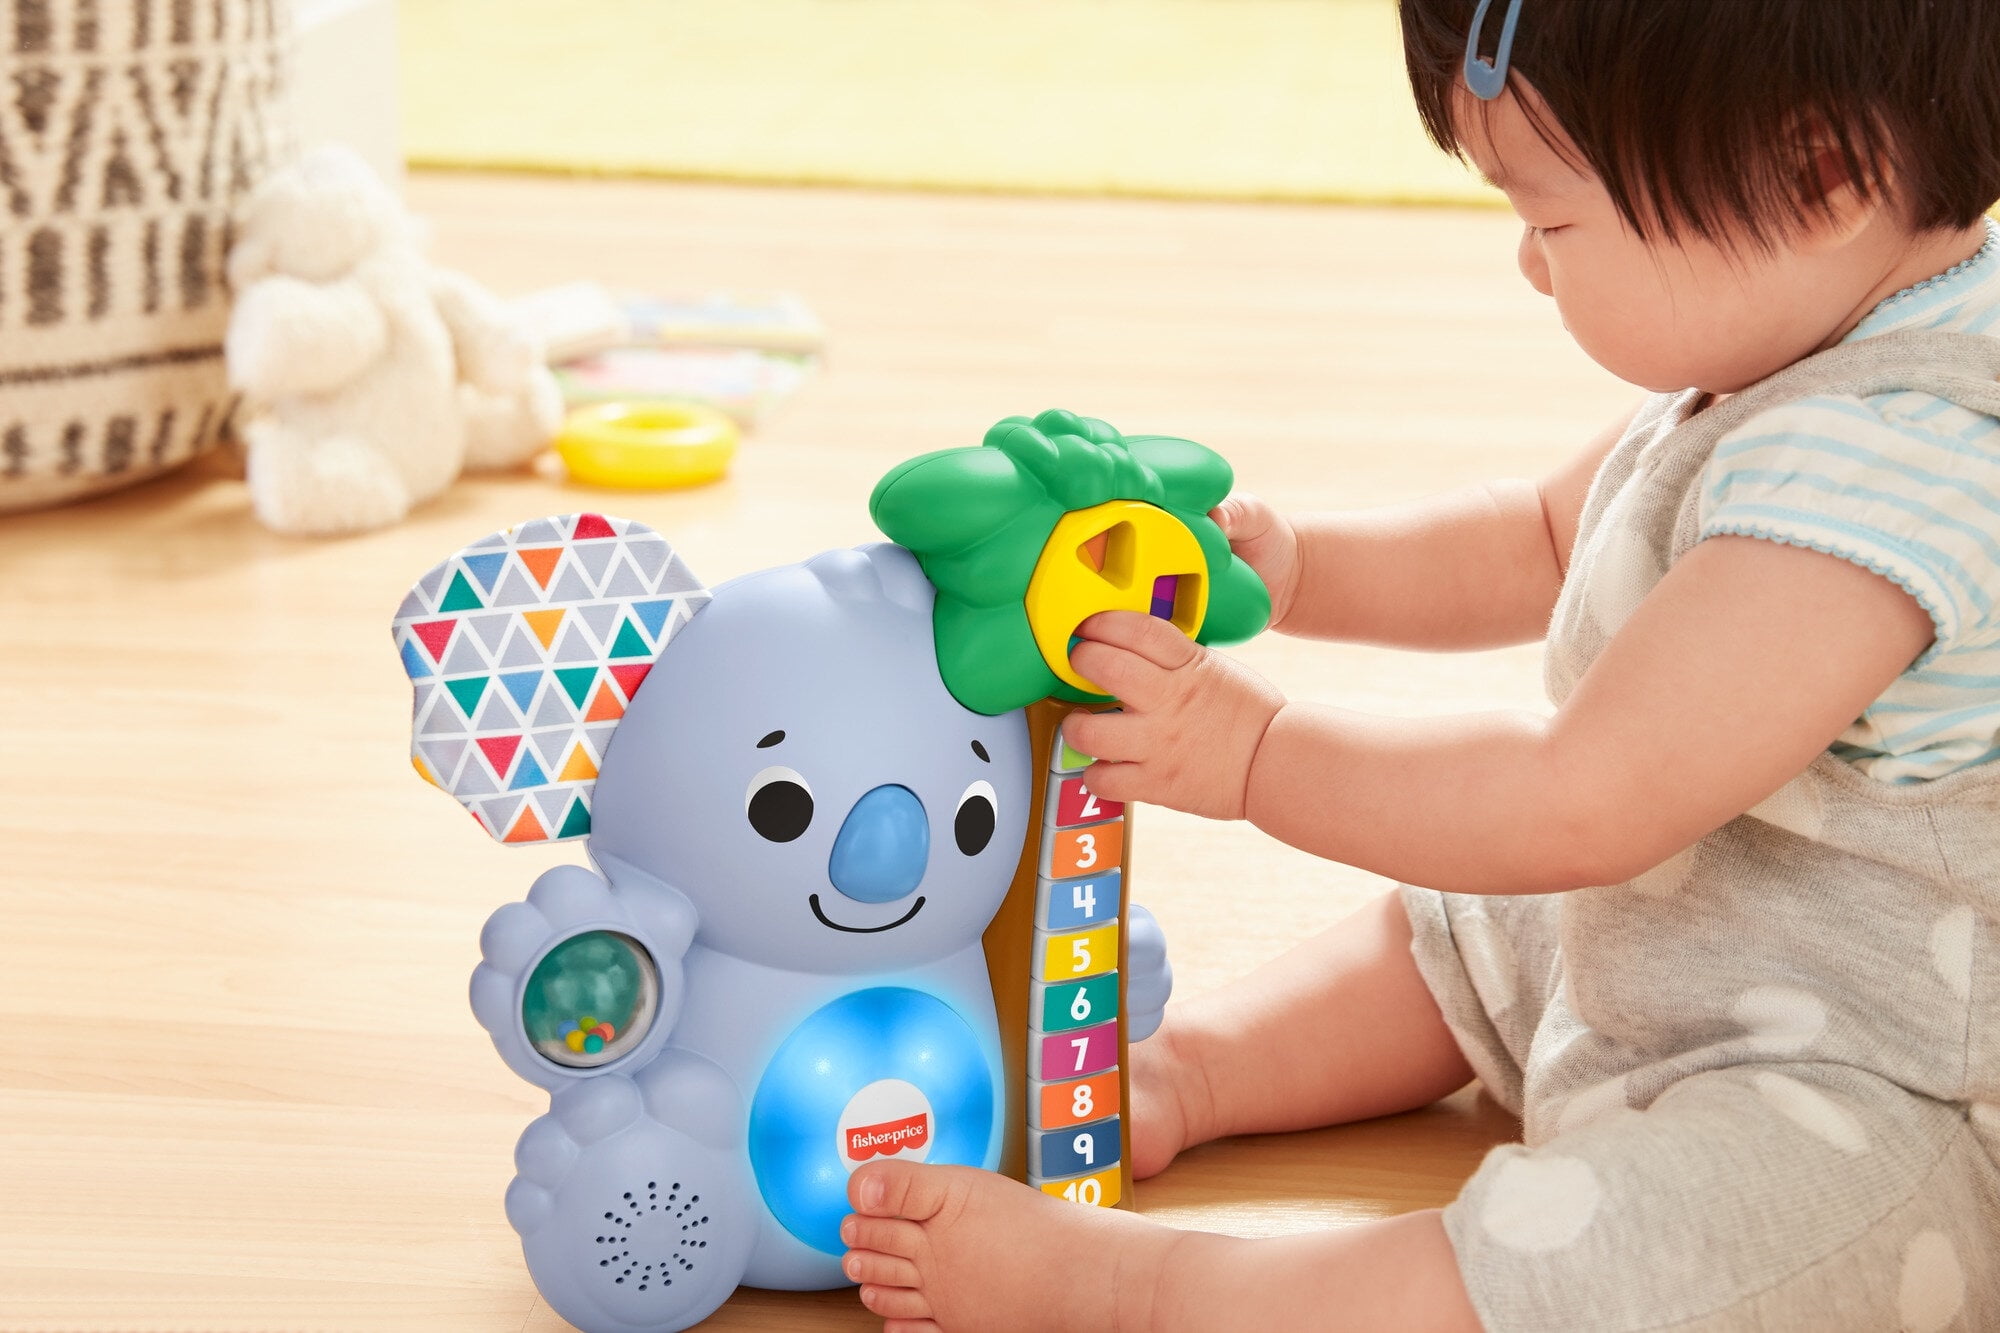 Fisher-Price linkimals Counting Koala interaktives Spielzeug für Kinder 